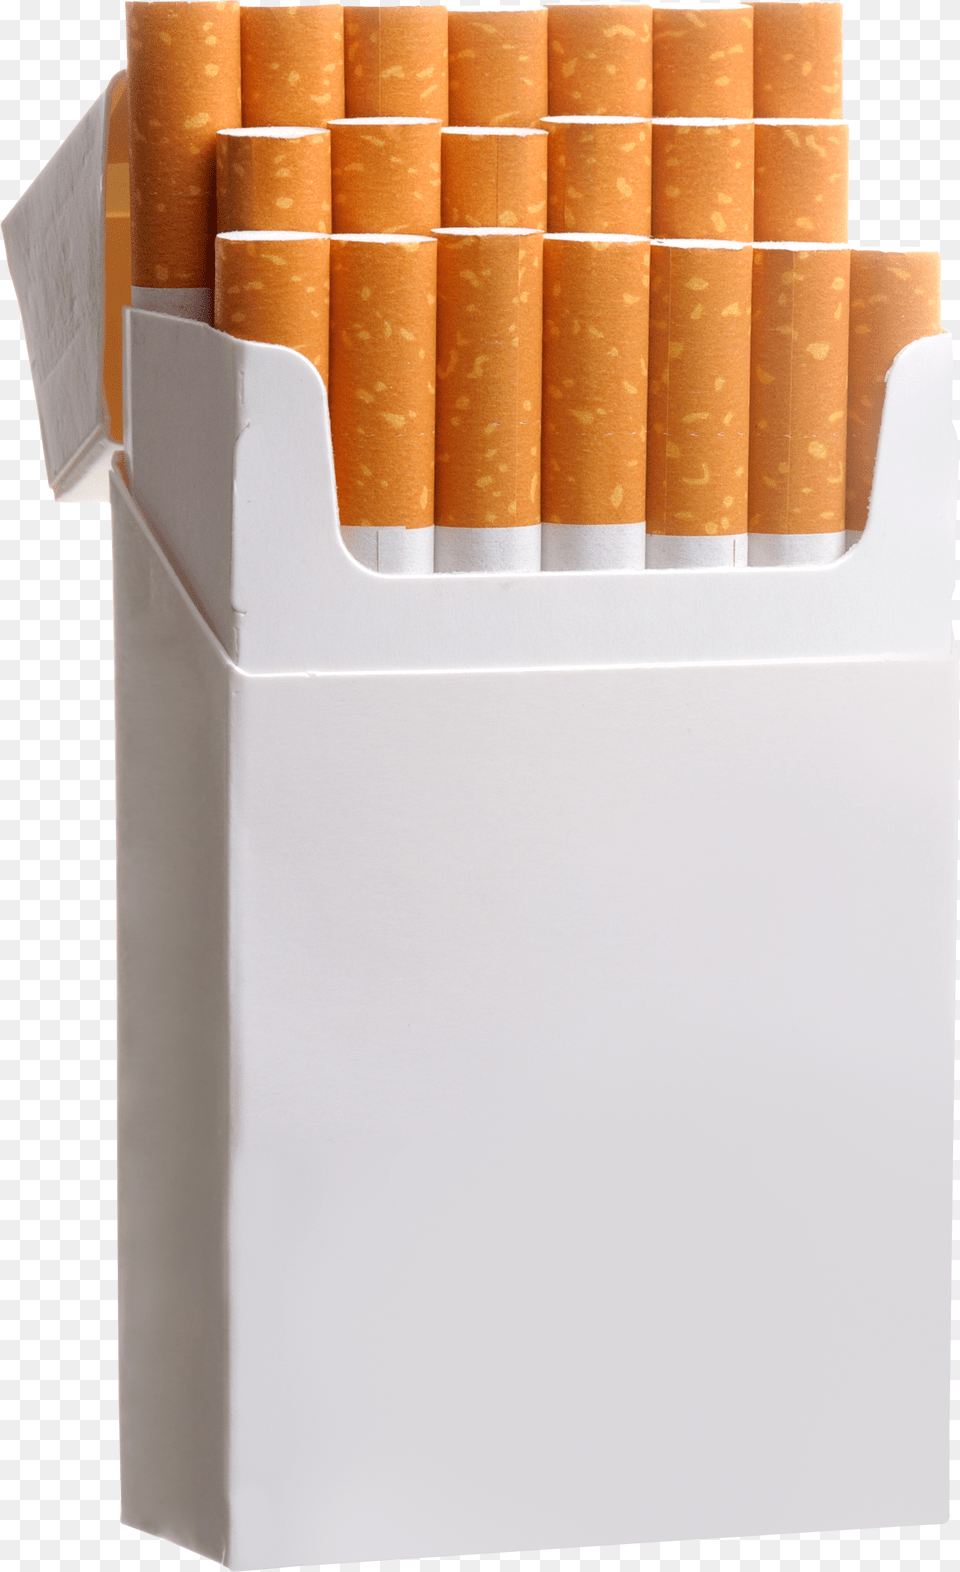 Cigarette Pack Cigarette Pack Png Image